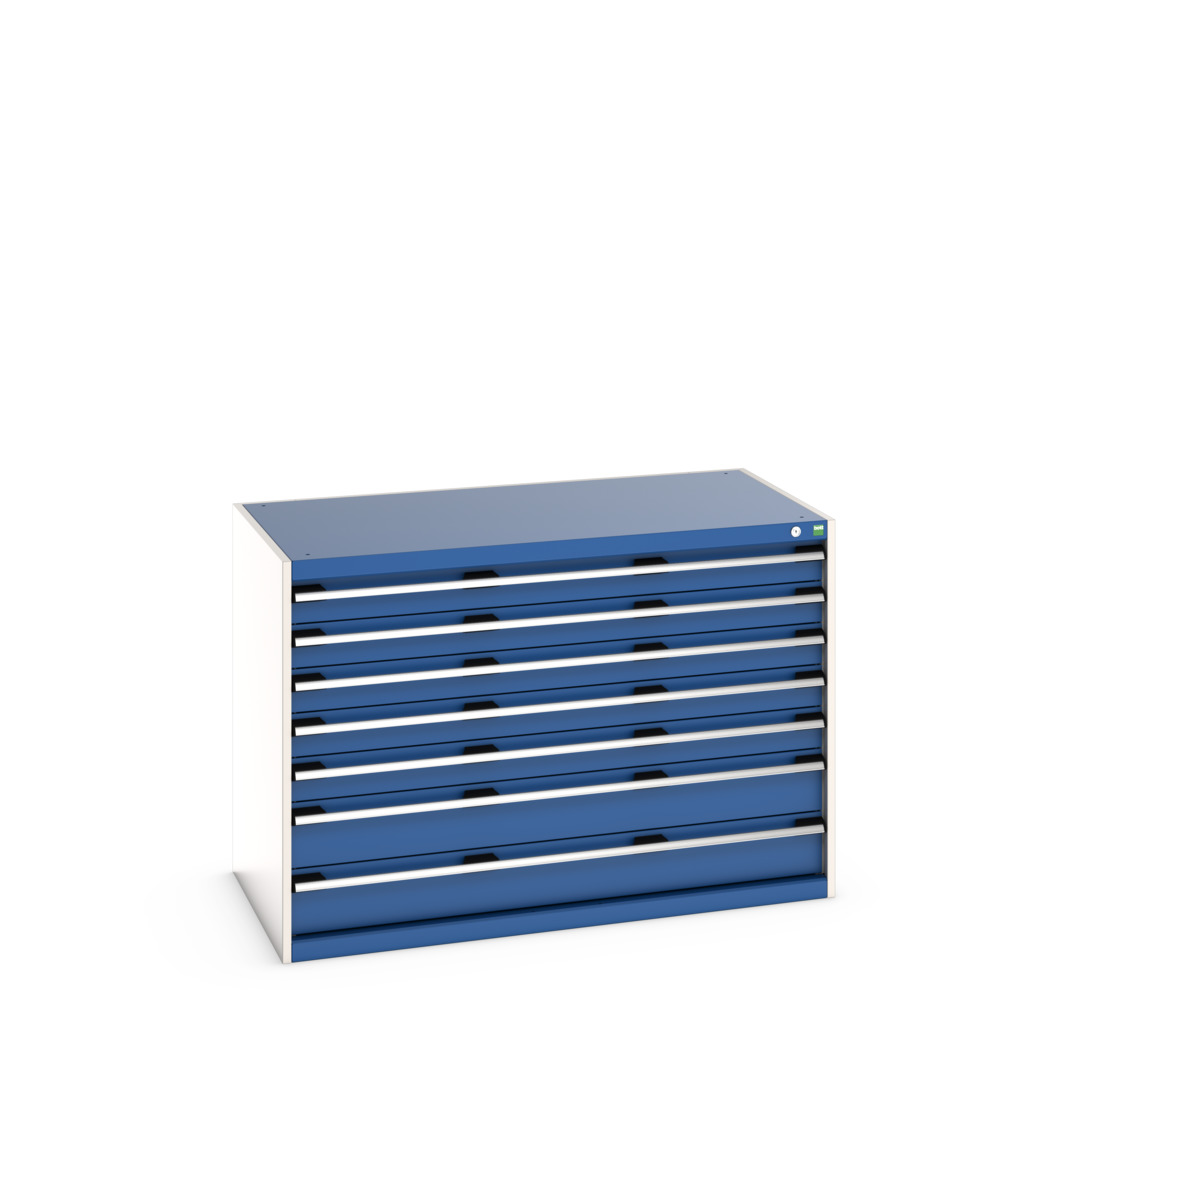 40030087.11V - cubio drawer cabinet